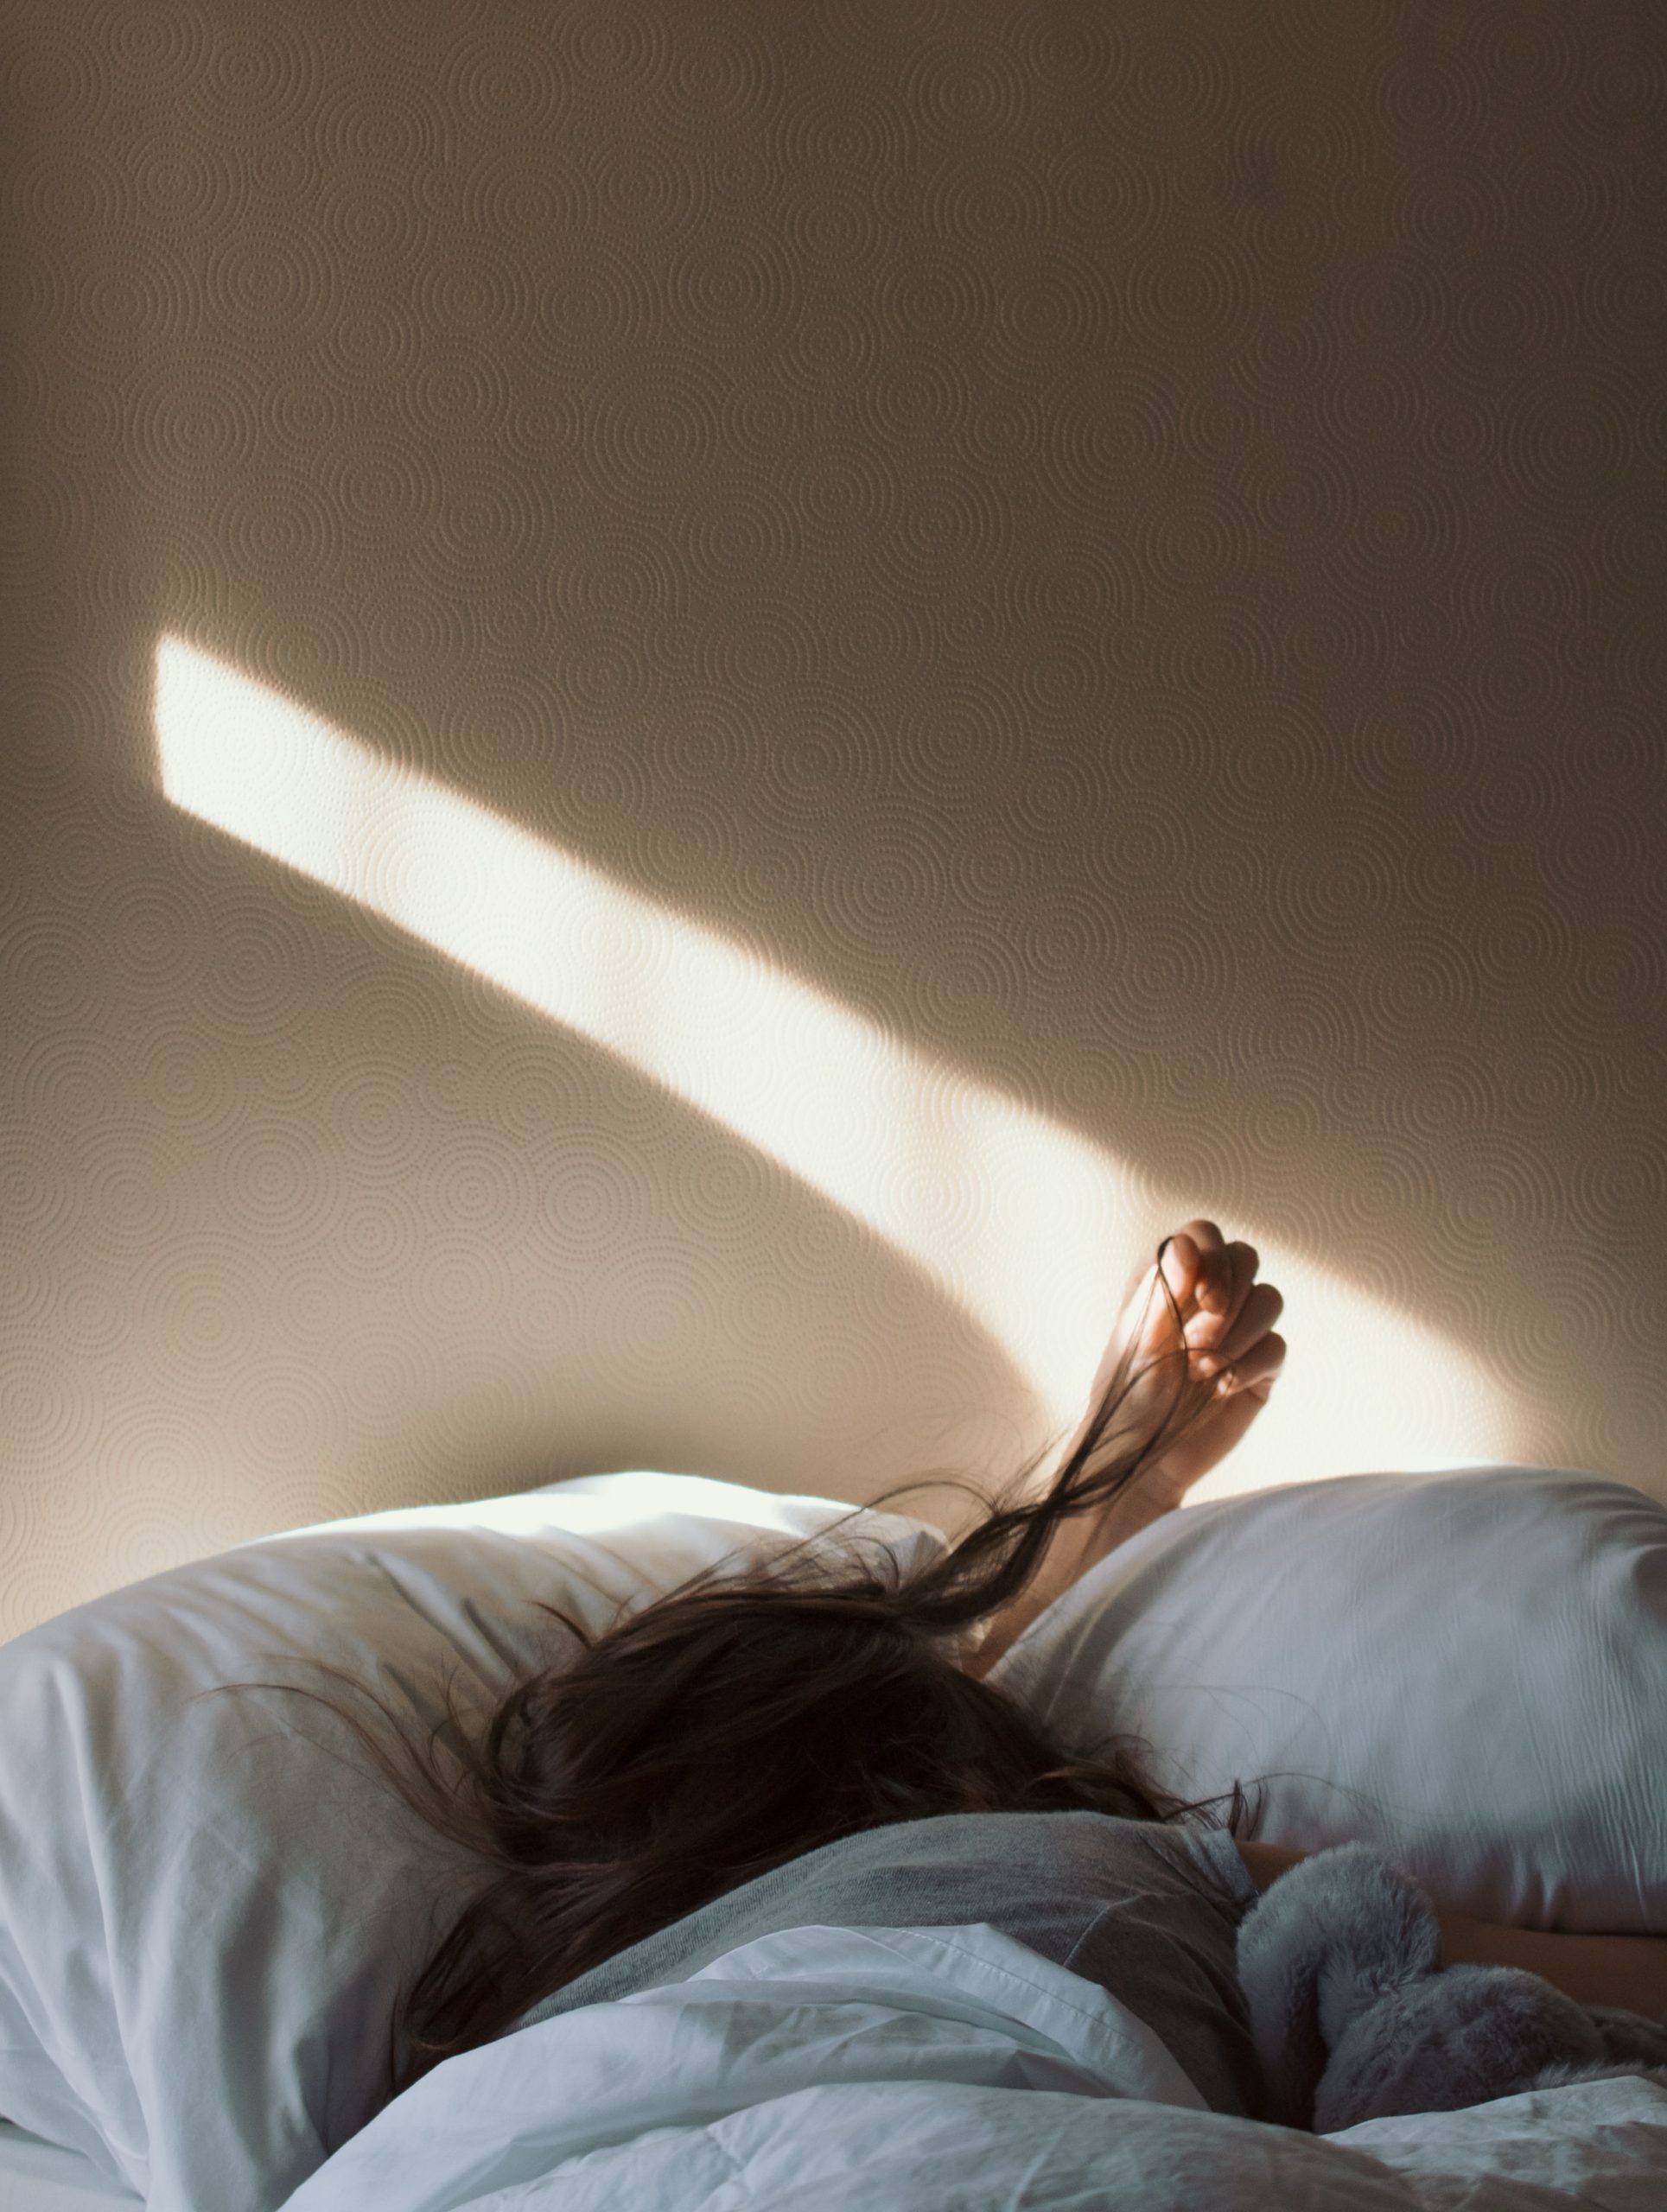 Read more about the article Sådan bekæmper du stressrelaterede søvnproblemer på naturlig vis